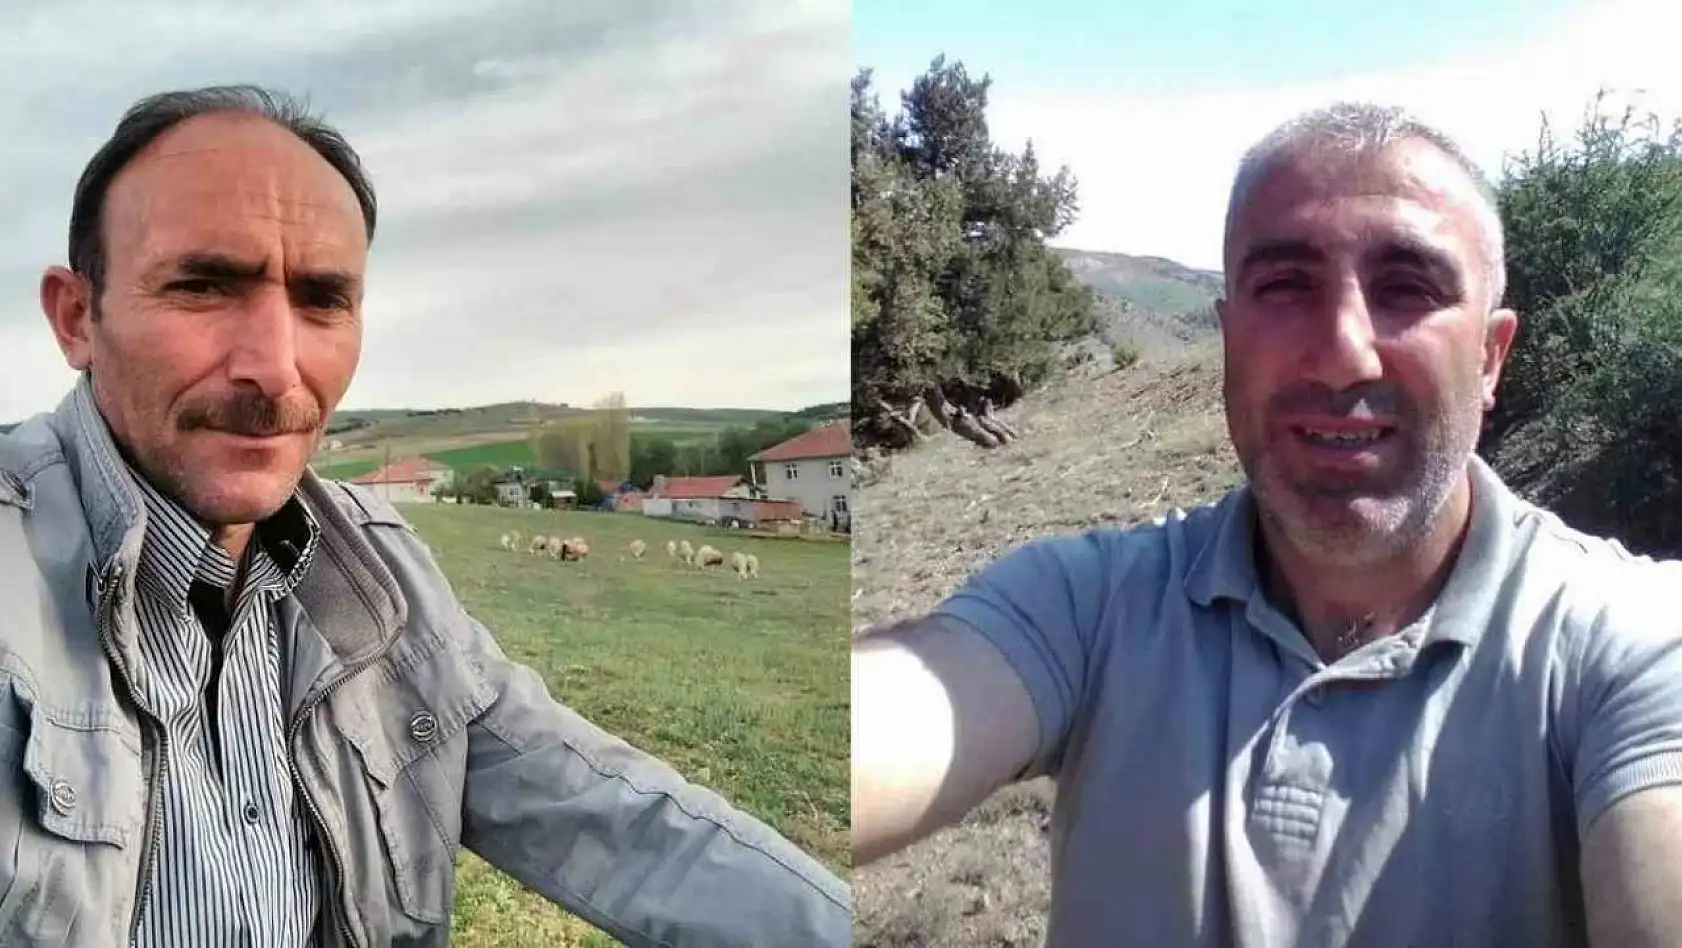 Yozgat'ta 2 kişiyi öldüren sanık, 36 yıl hapis cezasına çarptırıldı